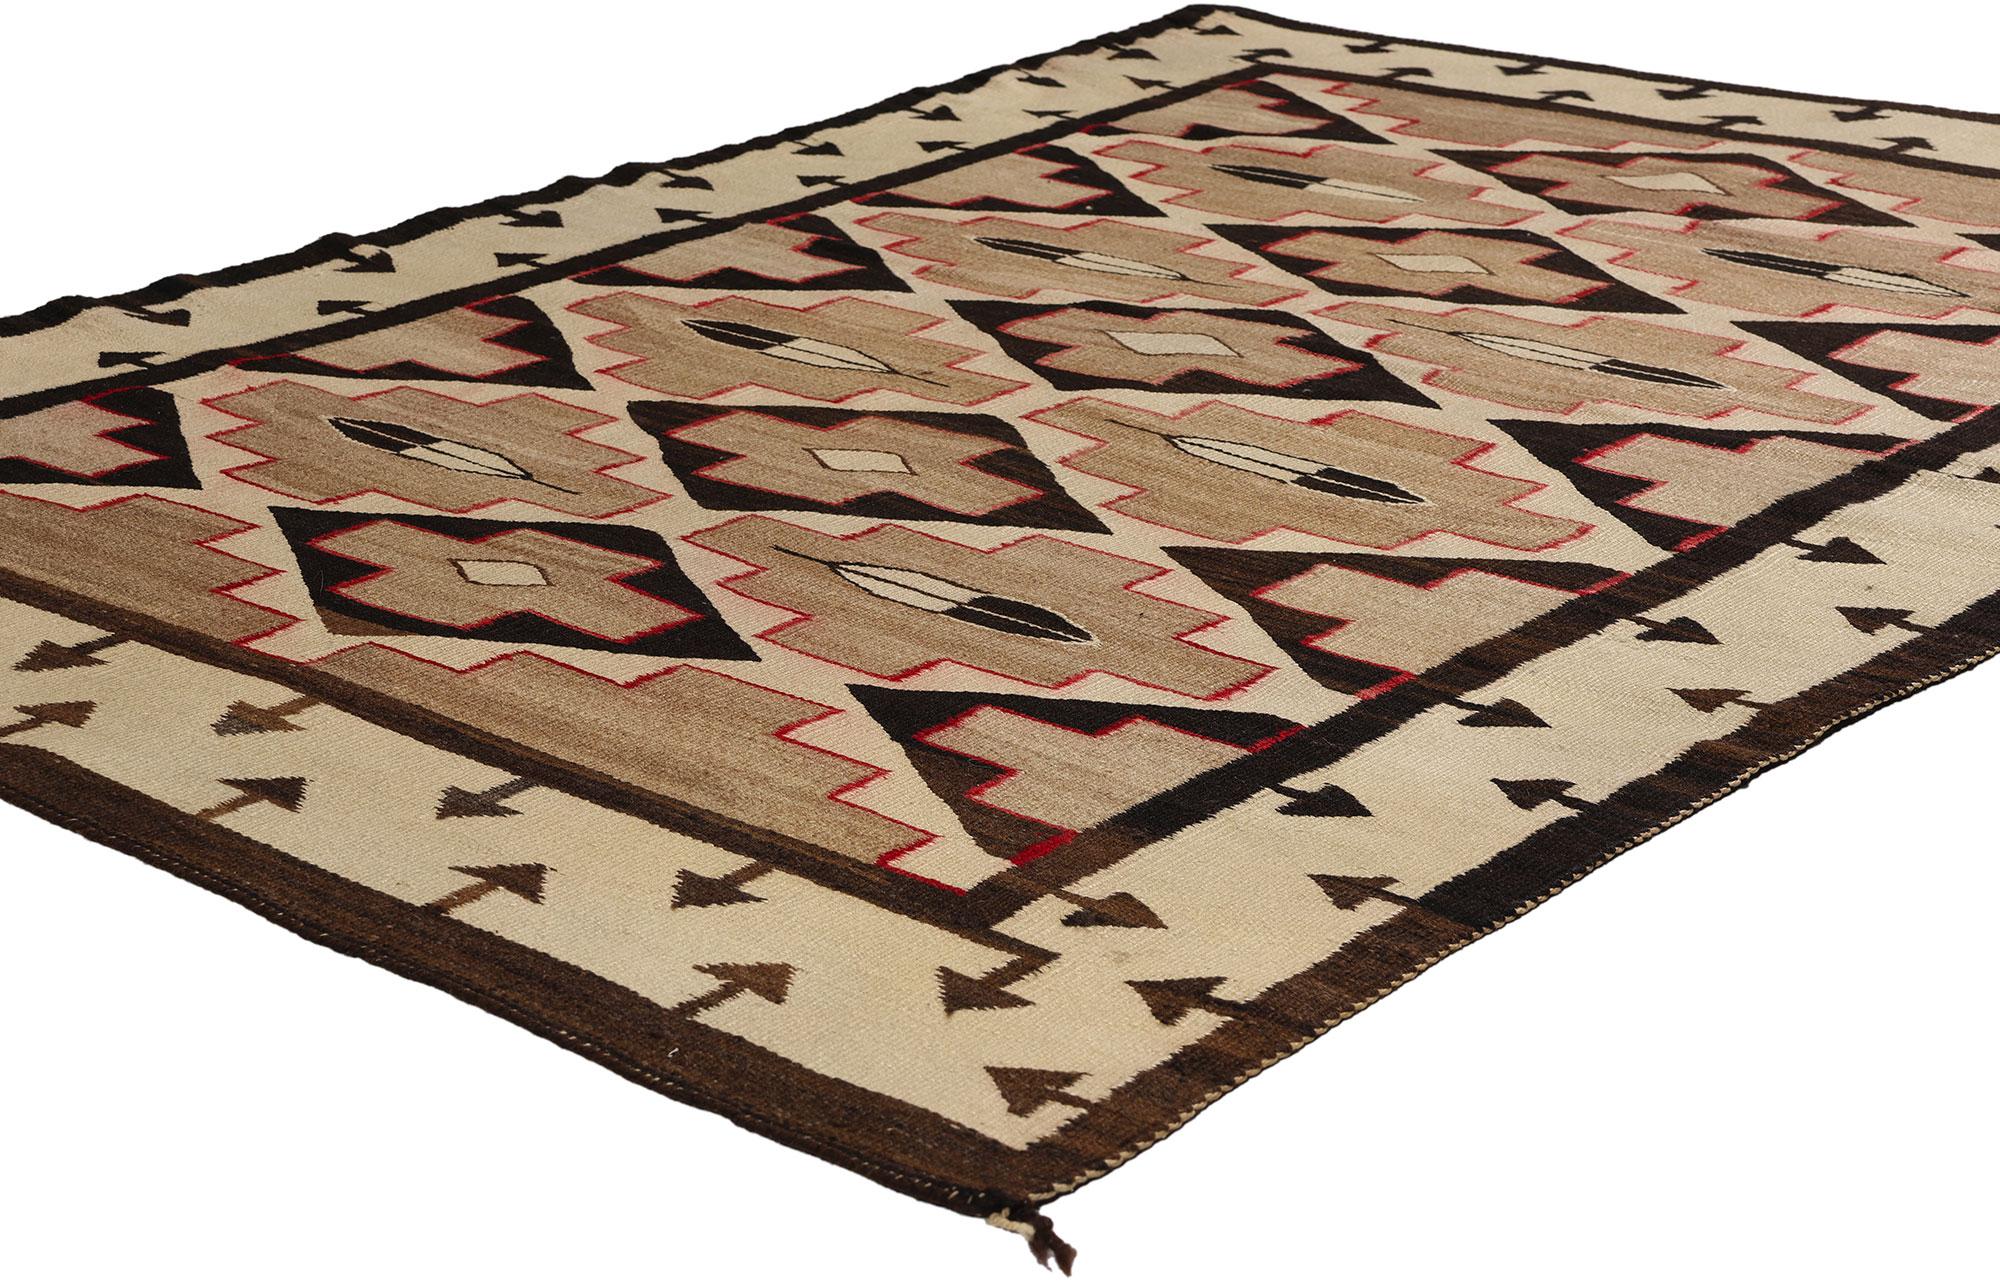 78723 Antiker Crystal Navajo-Teppich, 02'06 x 05'05. Die Crystal-Navajo-Teppiche aus dem Crystal-Gebiet der Navajo-Nation im Südwesten der Vereinigten Staaten werden für ihre außergewöhnliche Handwerkskunst, ihre komplizierten Designs und ihre